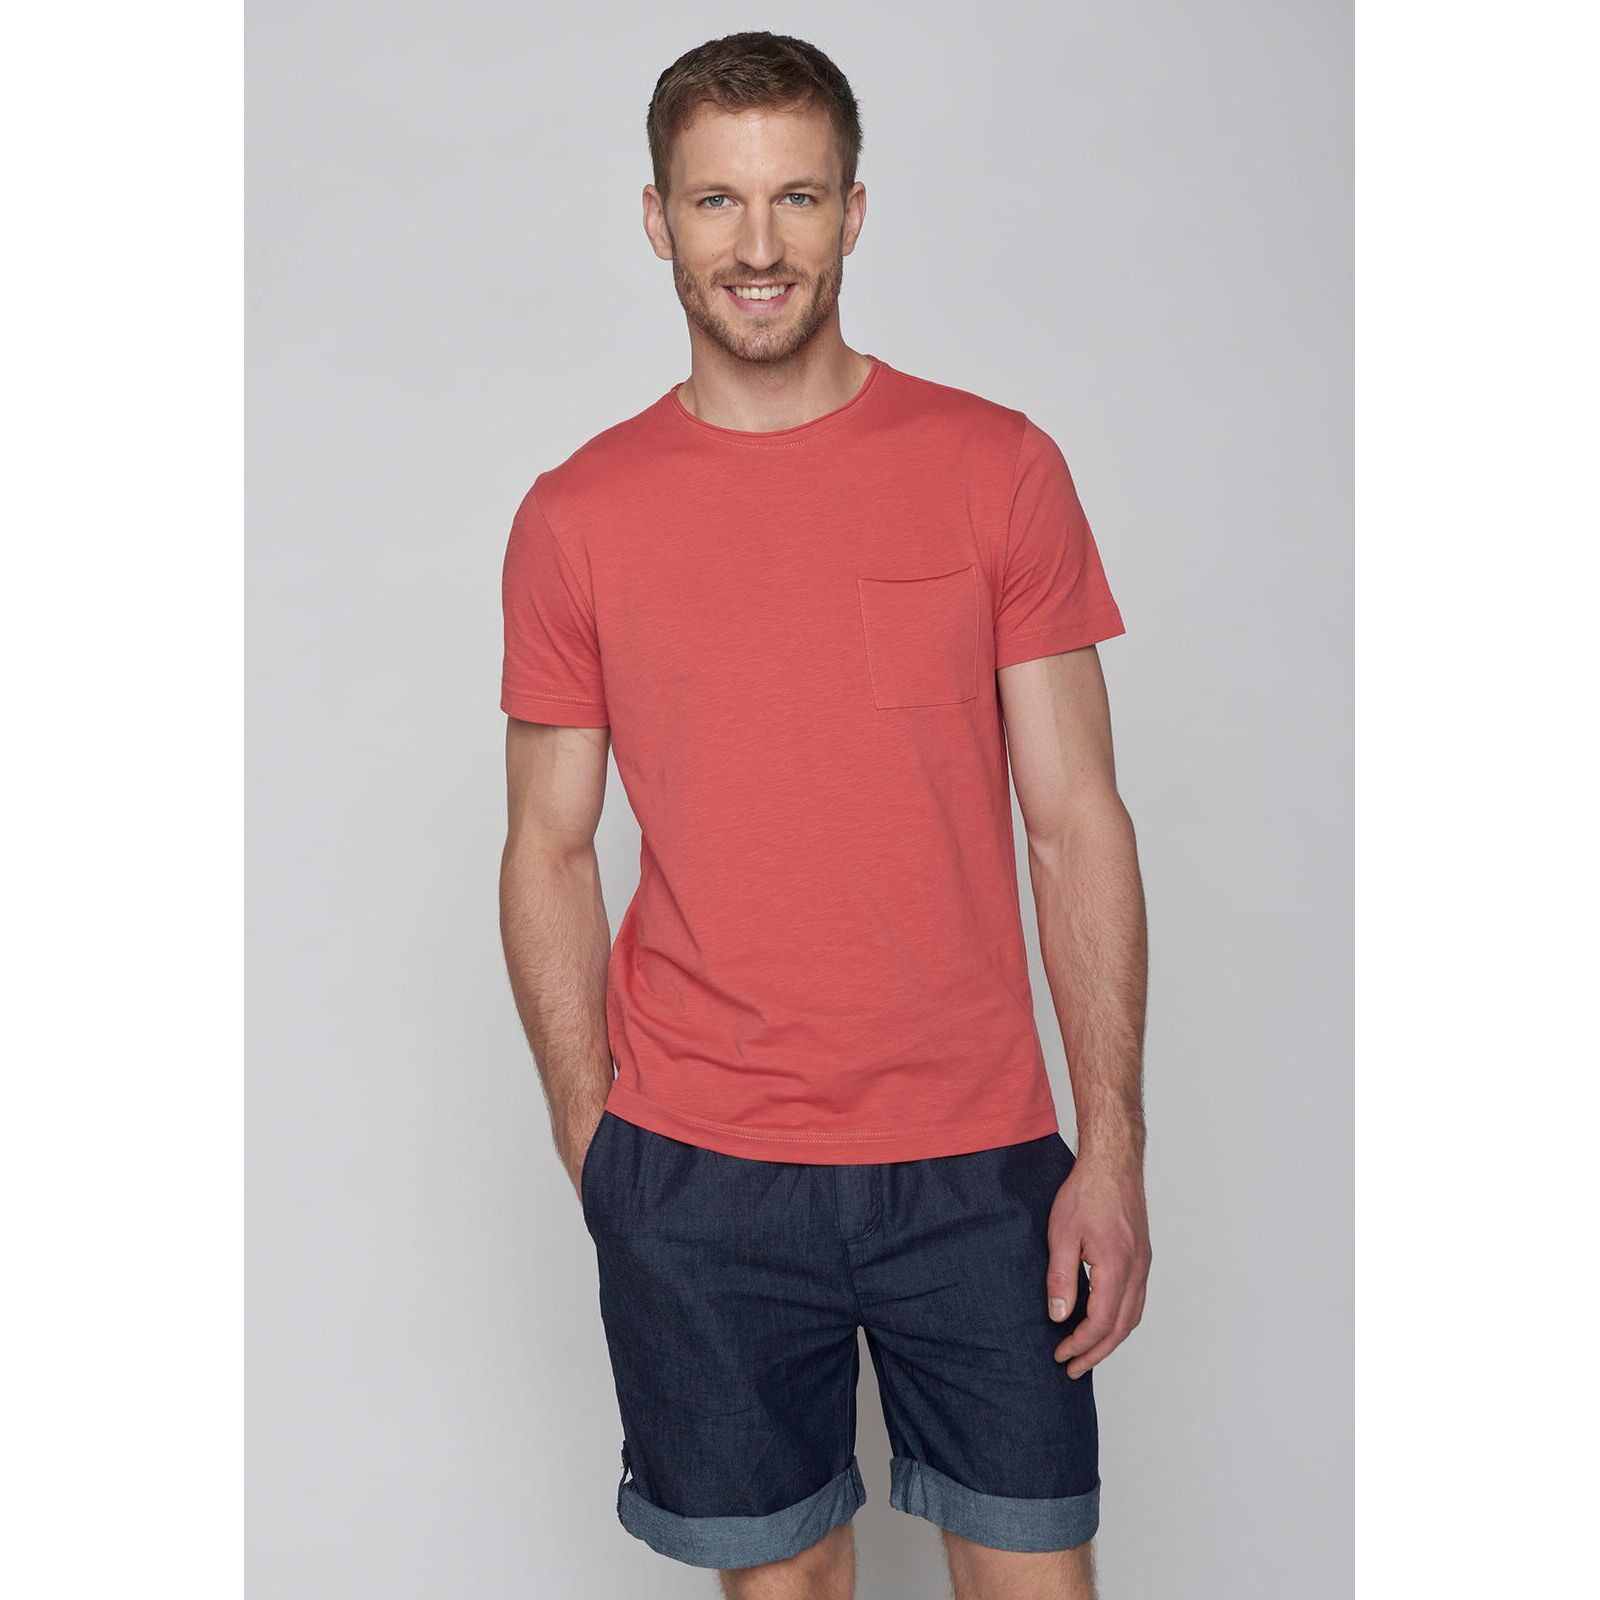 GREENBOMB Herren T-Shirt Open sun red XL